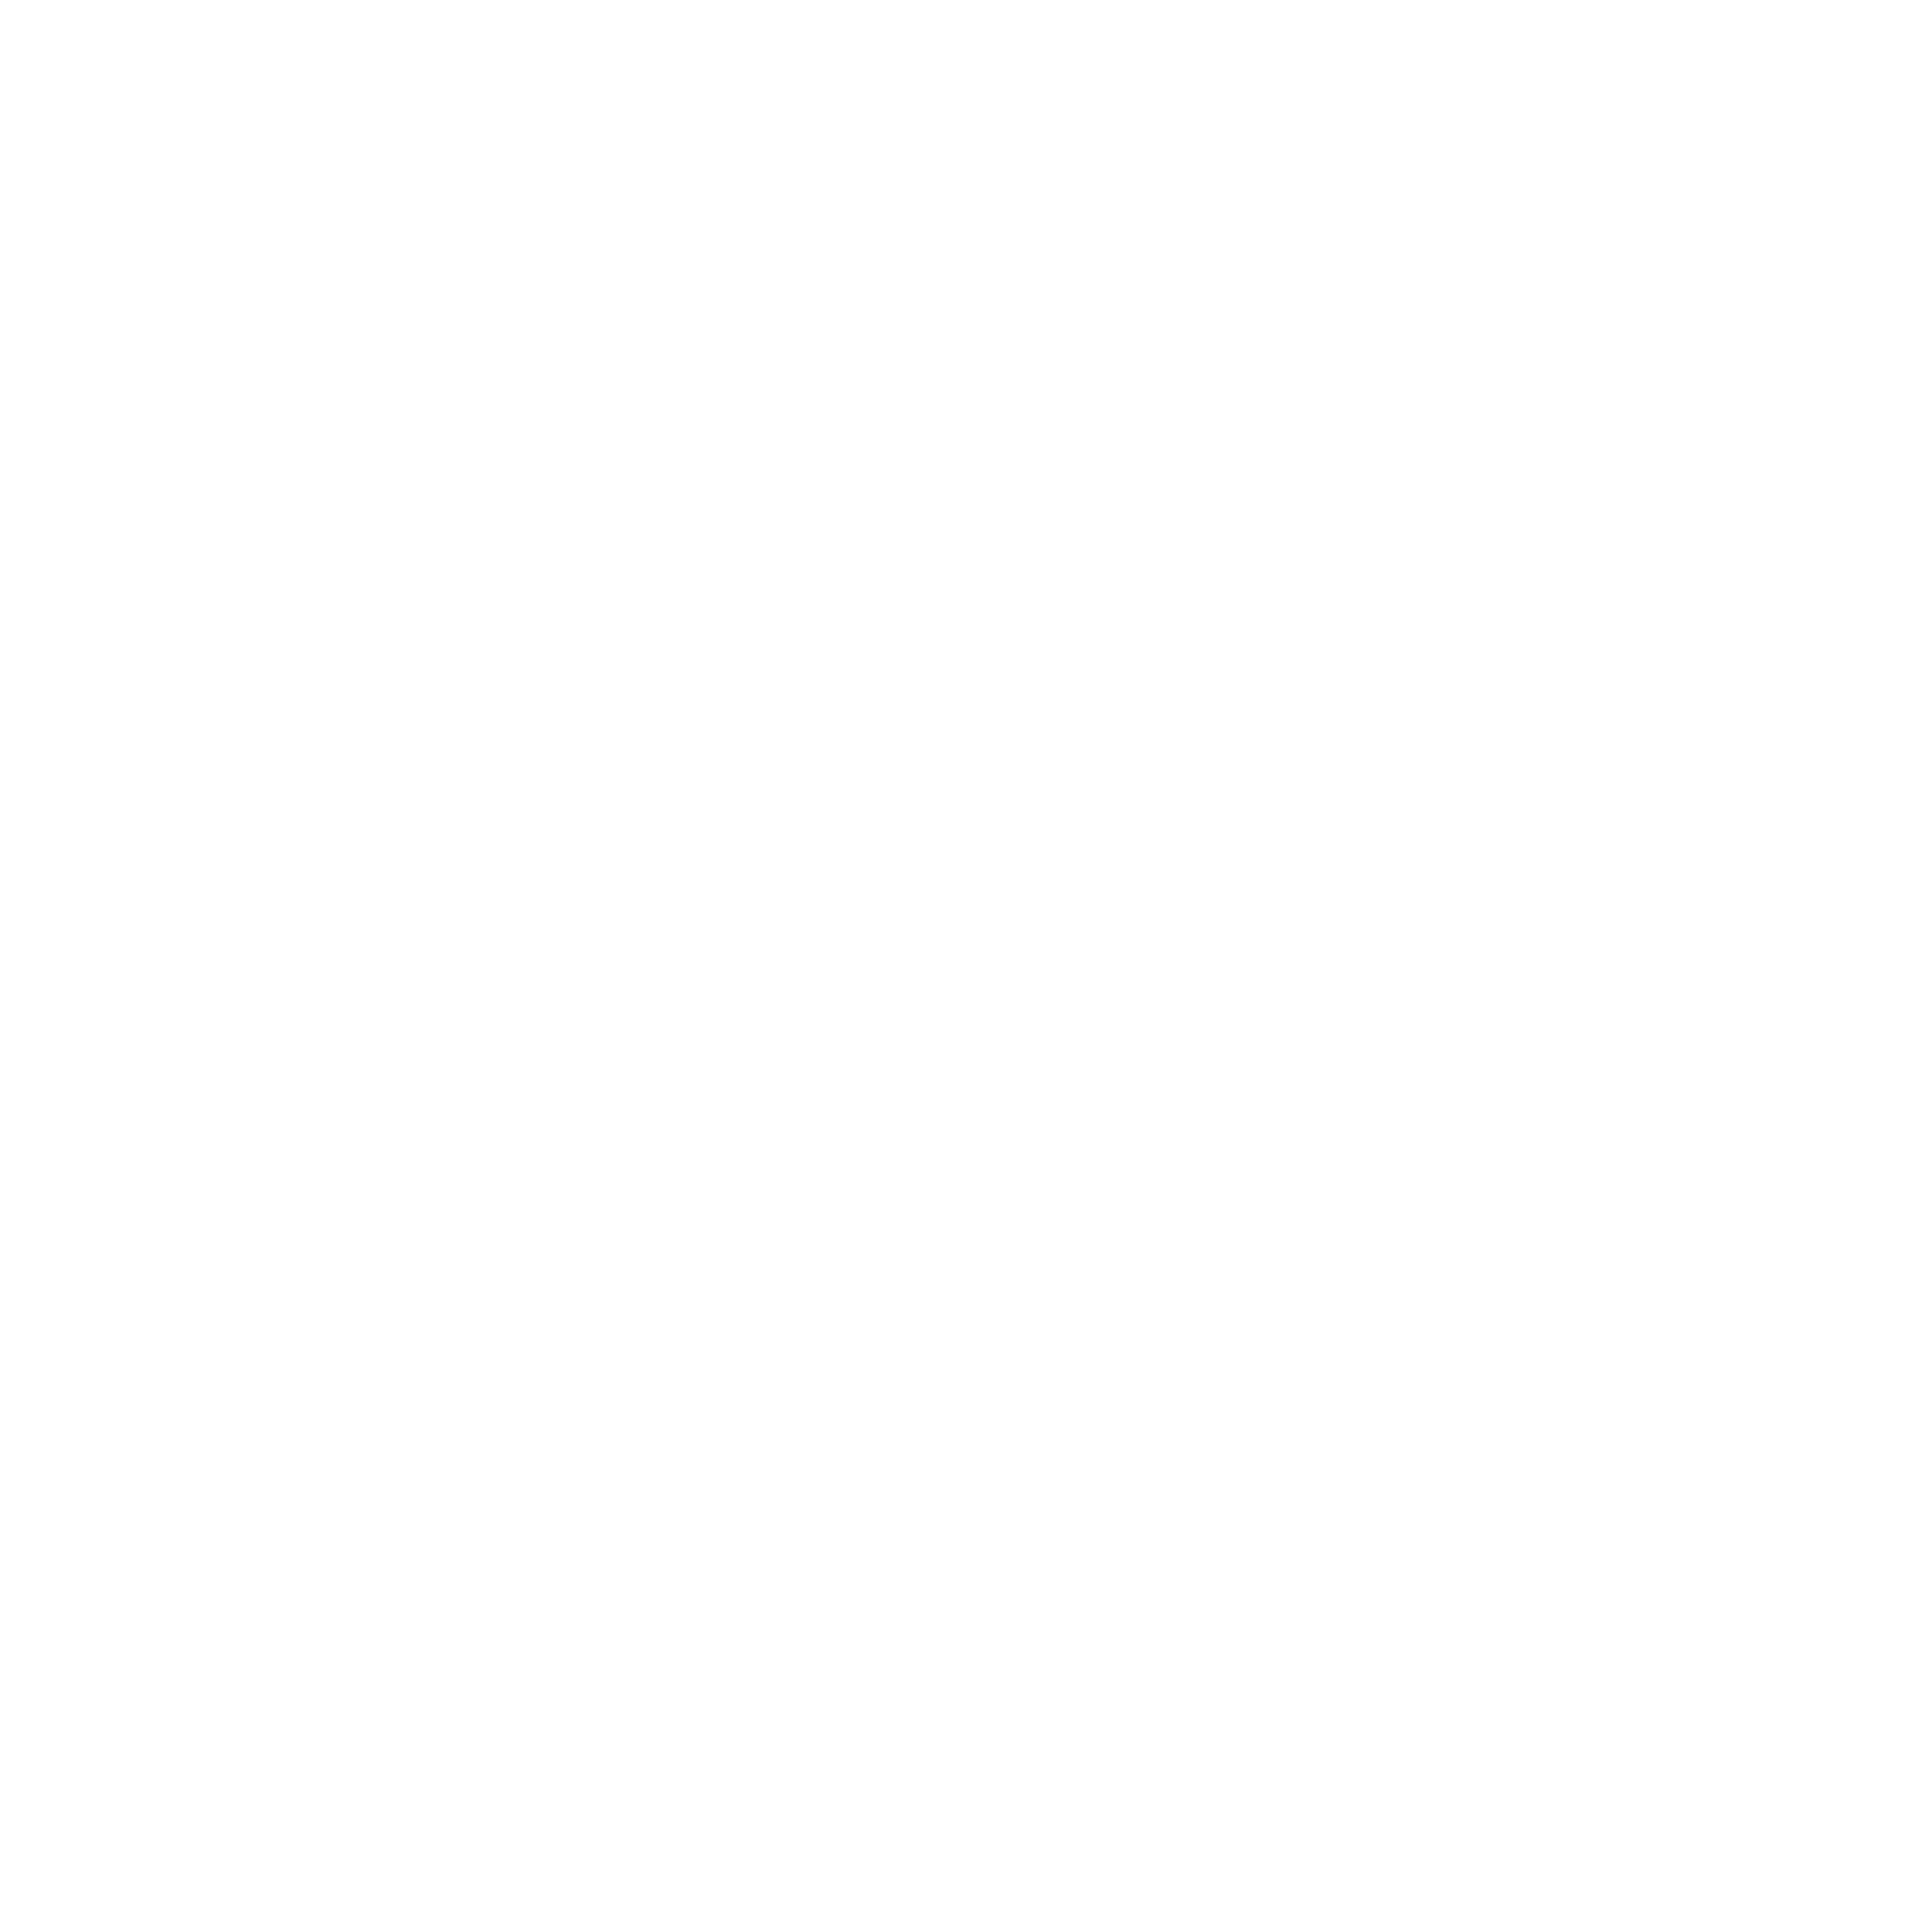 Cannabis in Massachusetts